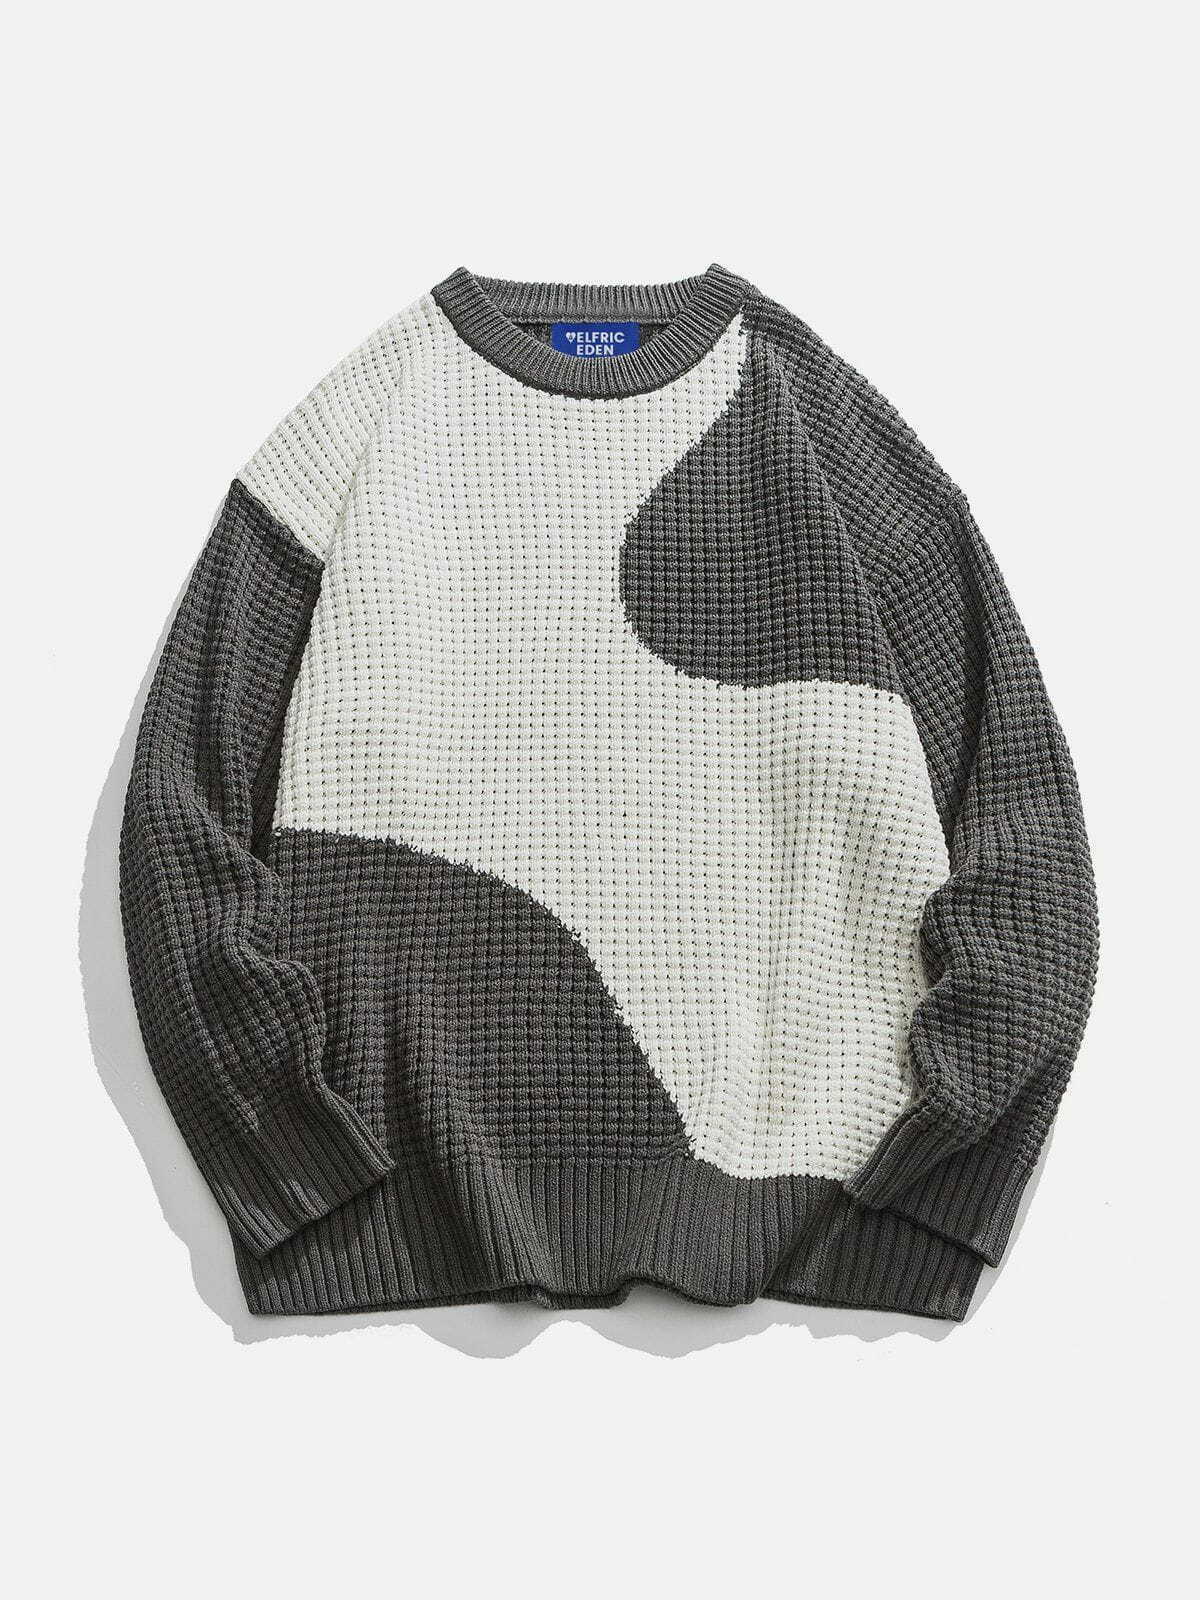 irregular patchwork sweater urban fashion statement 1412